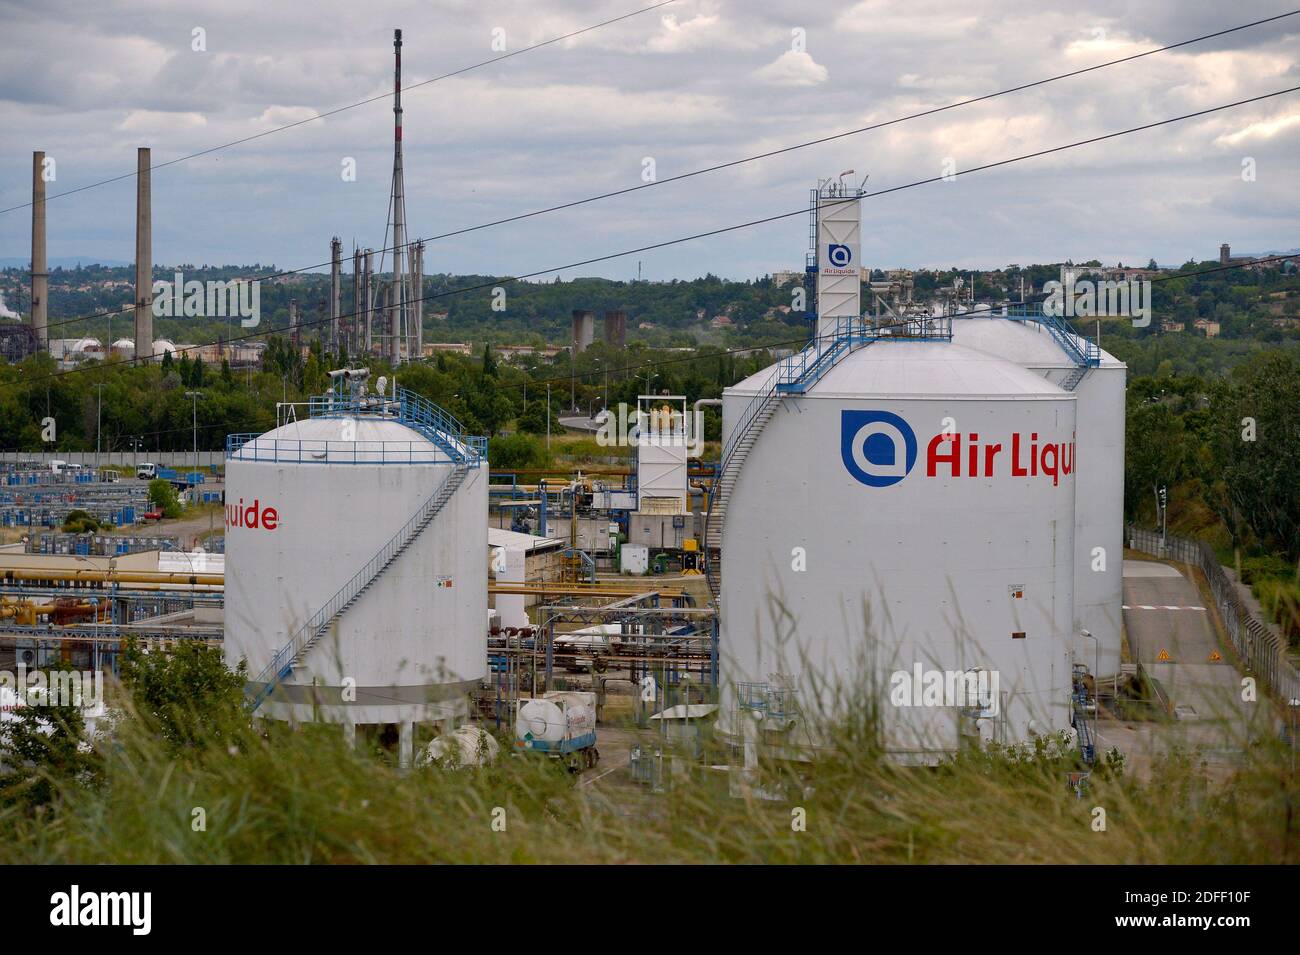 Vue d'ensemble de l'usine Air liquide de Feyzin, près de Lyon, France, le  16 juillet 2020, où la production d'hydrogène est comprimée pour le  stockage sous forme gazeuse à haute pression. L'hydrogène